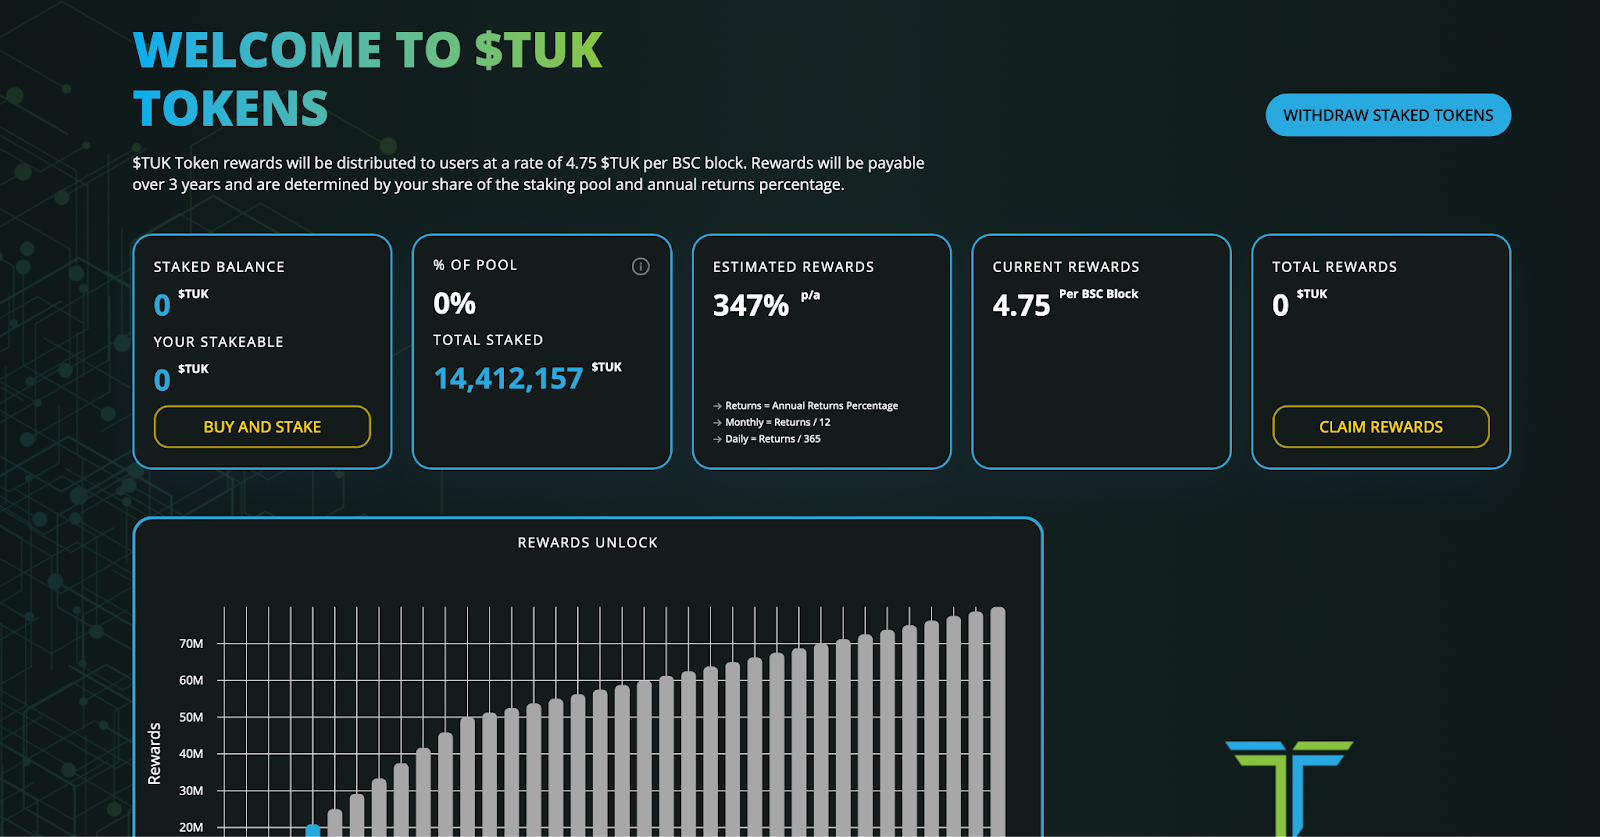 eTukTuk 600k در پیش فروش افزایش می دهد، از سهام TUK پشتیبانی می کند - 3